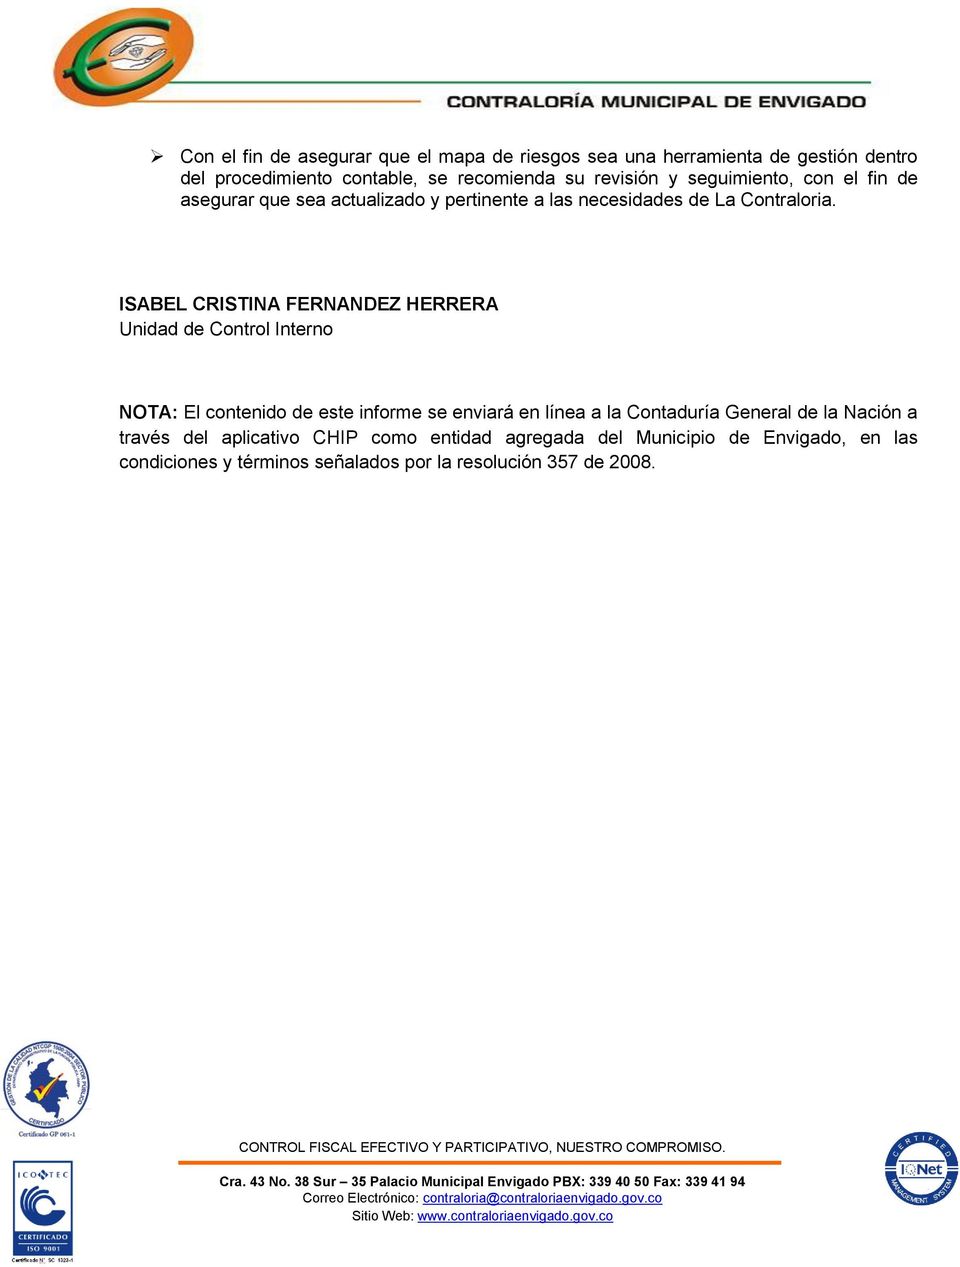 ISABEL CRISTINA FERNANDEZ HERRERA Unidad de Control Interno NOTA: El contenido de este informe se enviará en línea a la Contaduría